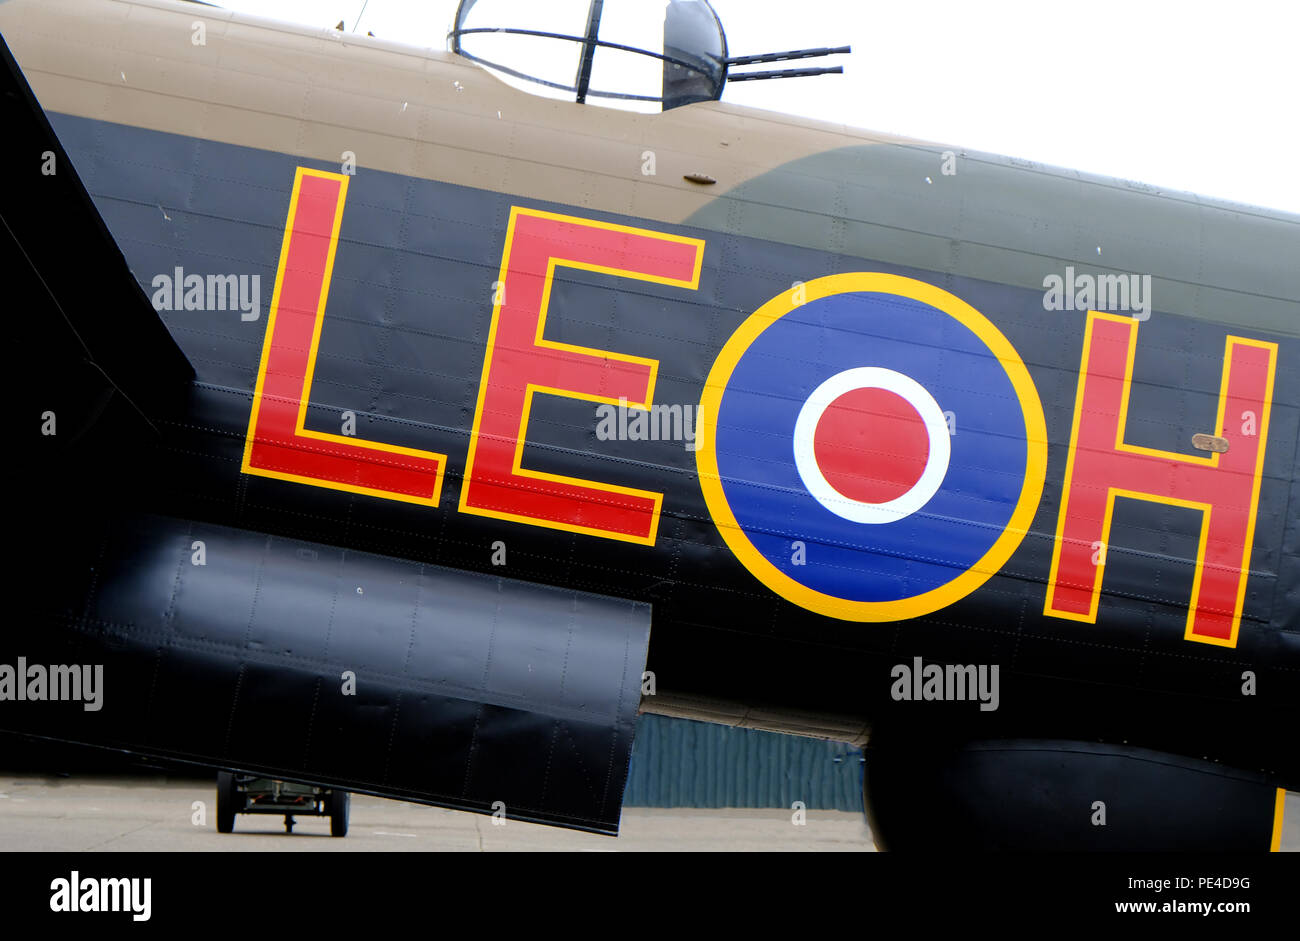 'Jane' Avro Lancaster - World War 2 bombardiers lourds britanniques et l'un des 3 aéronefs en cours d'exécution Banque D'Images